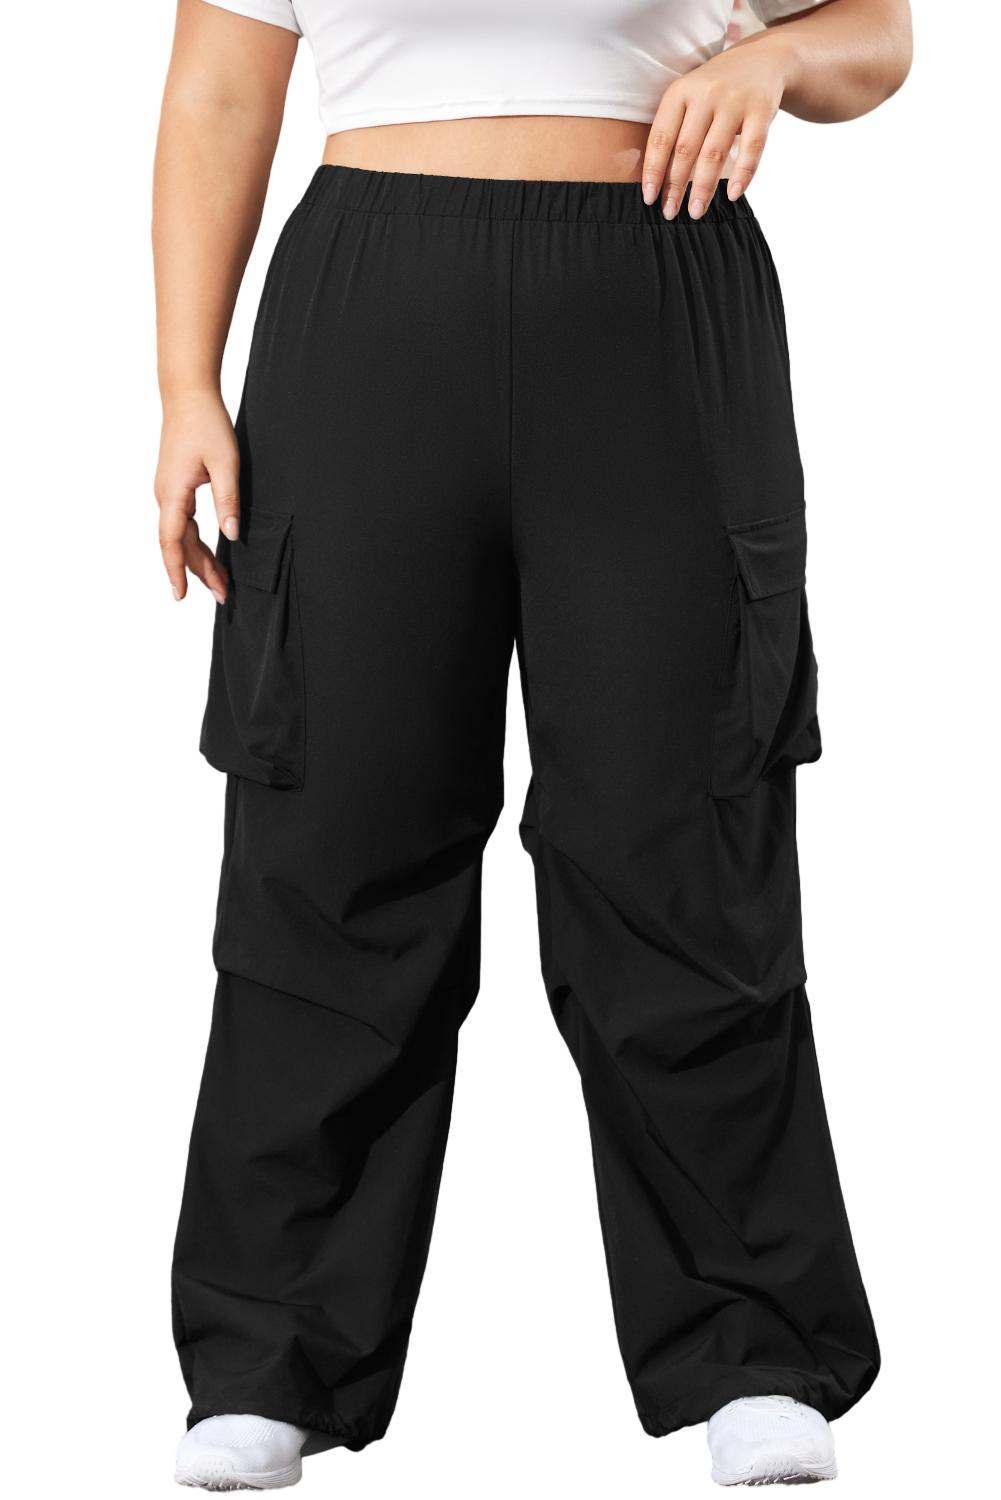 Črne kargo hlače z žepom in elastiko v pasu velike velikosti